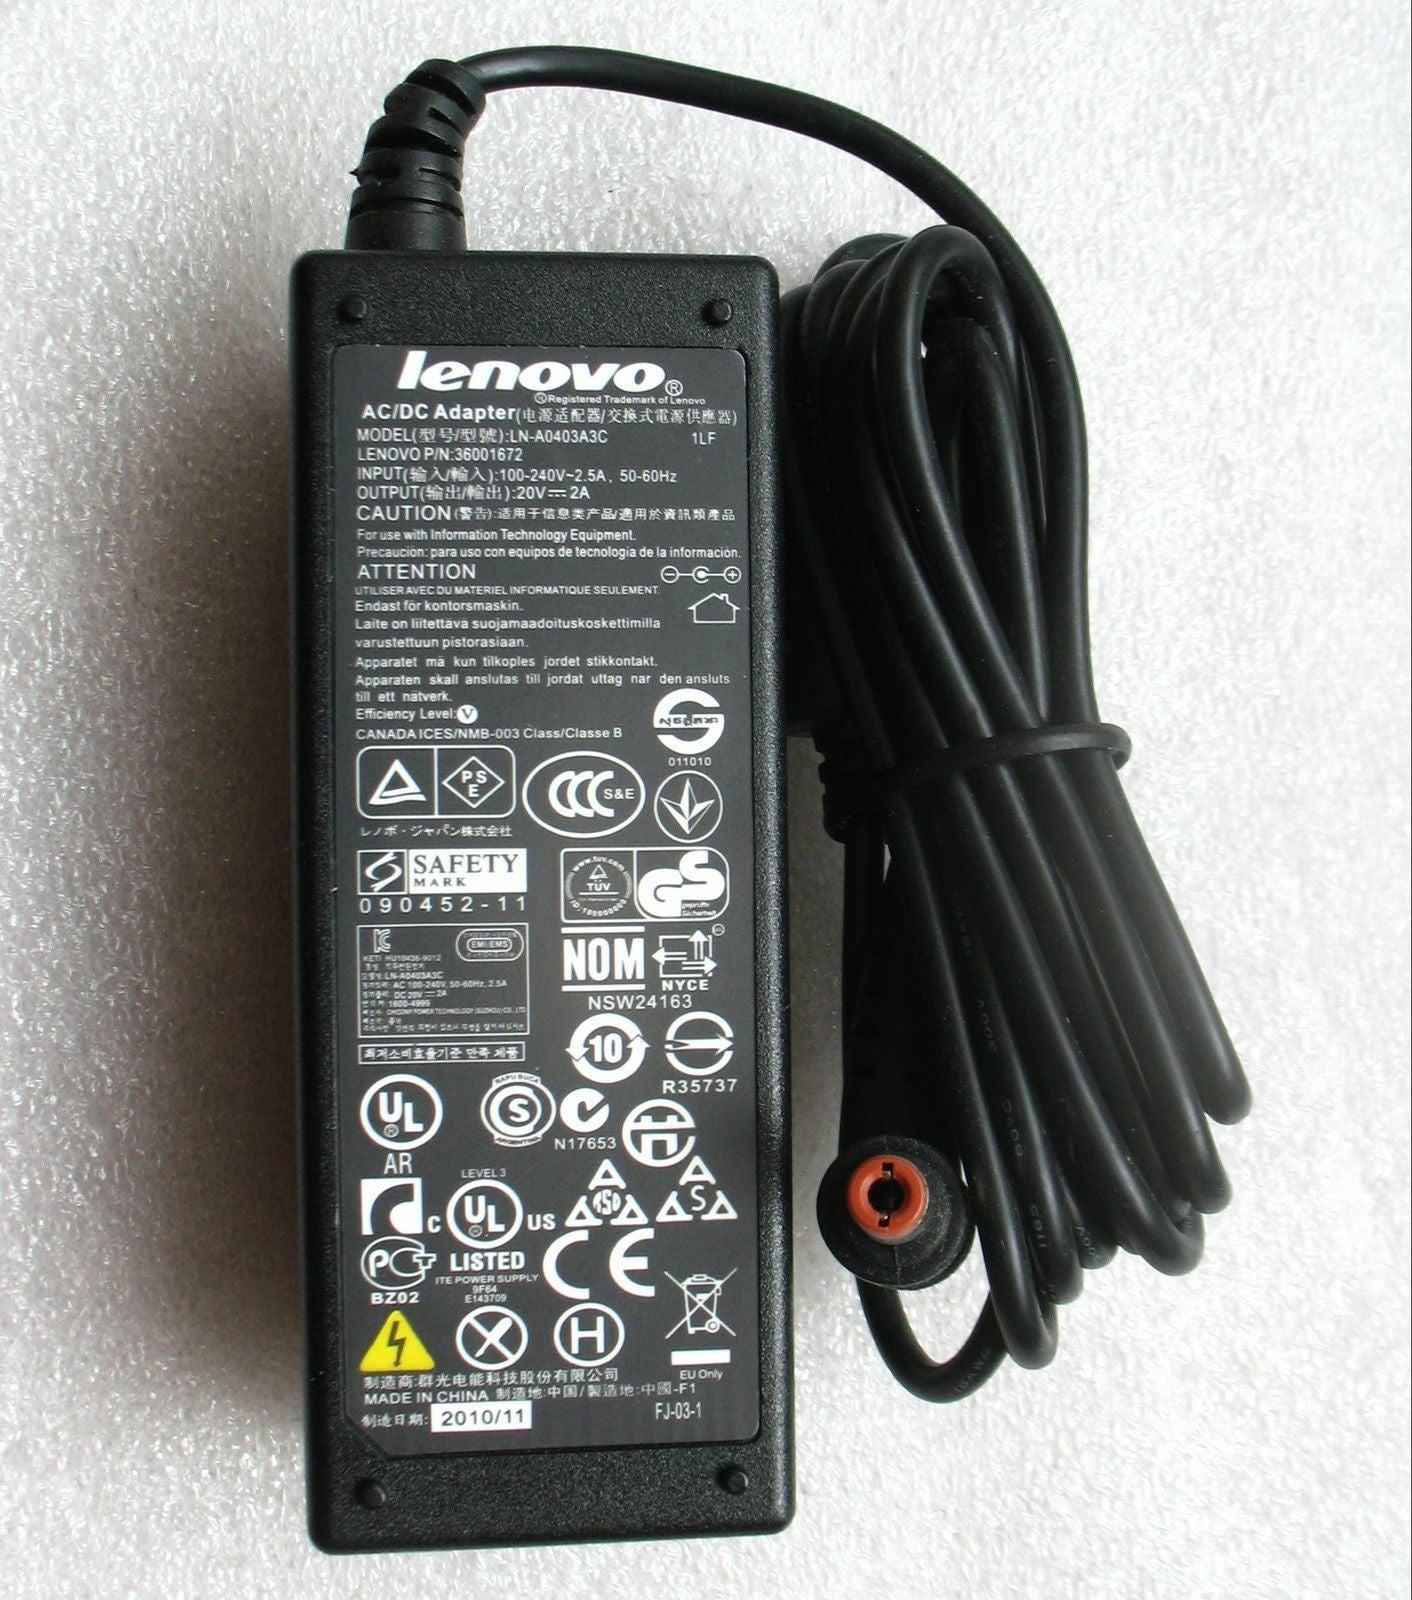 Genuine Lenovo 40W AC Adapter for IdeaPad U310 59365302,LN-A0403A3C,ADP-40NH B